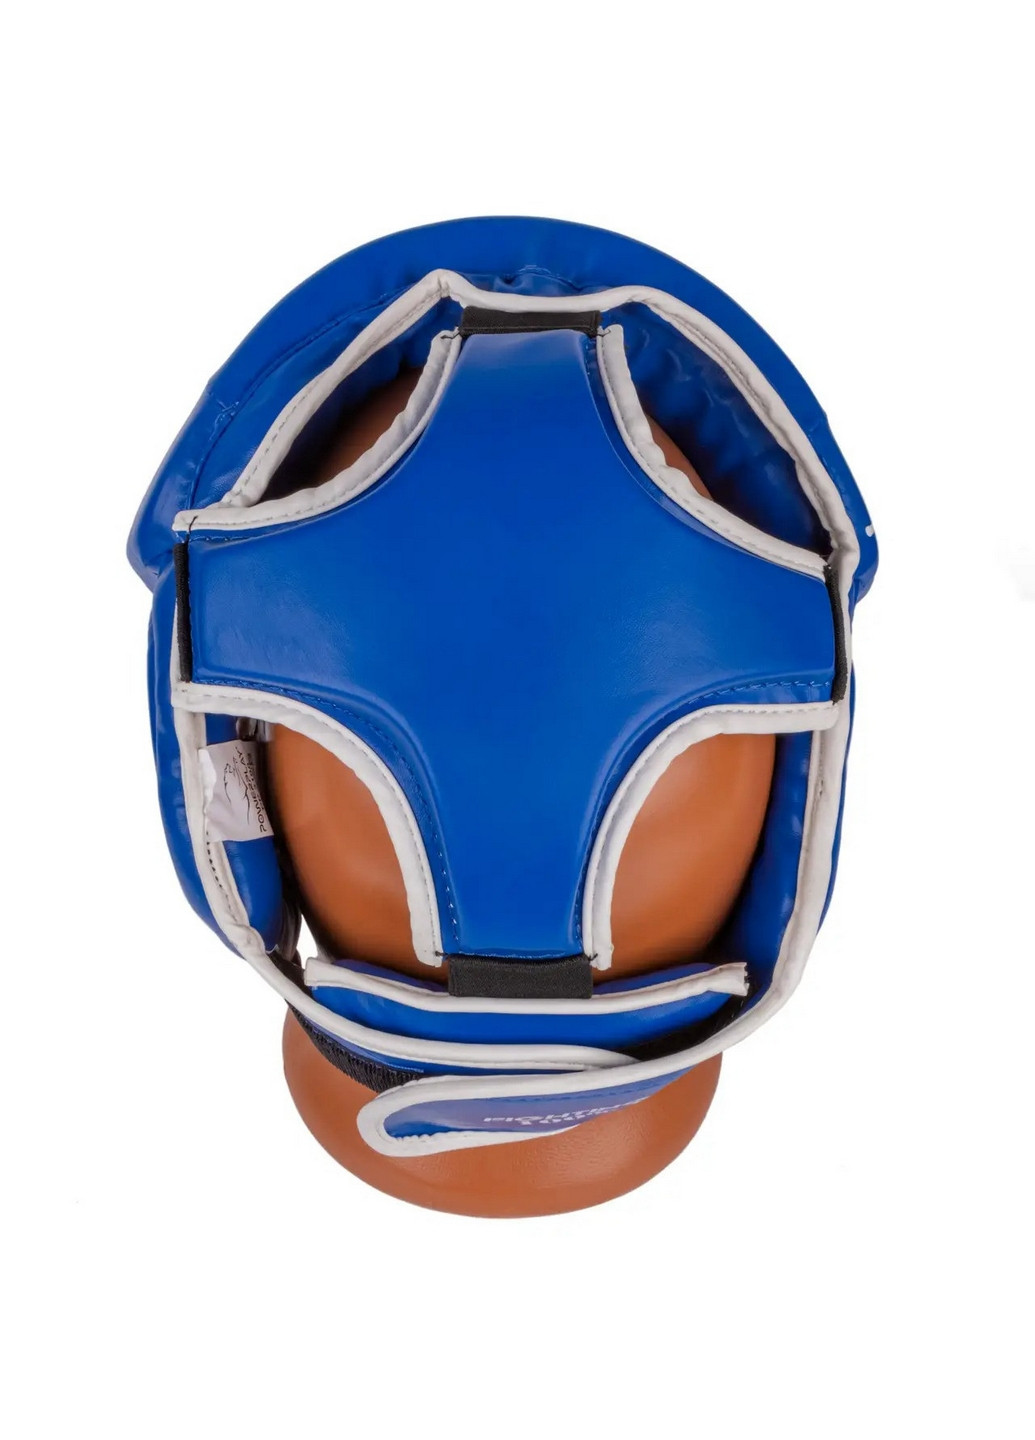 Боксерский шлем тренировочный XL PowerPlay (260499532)